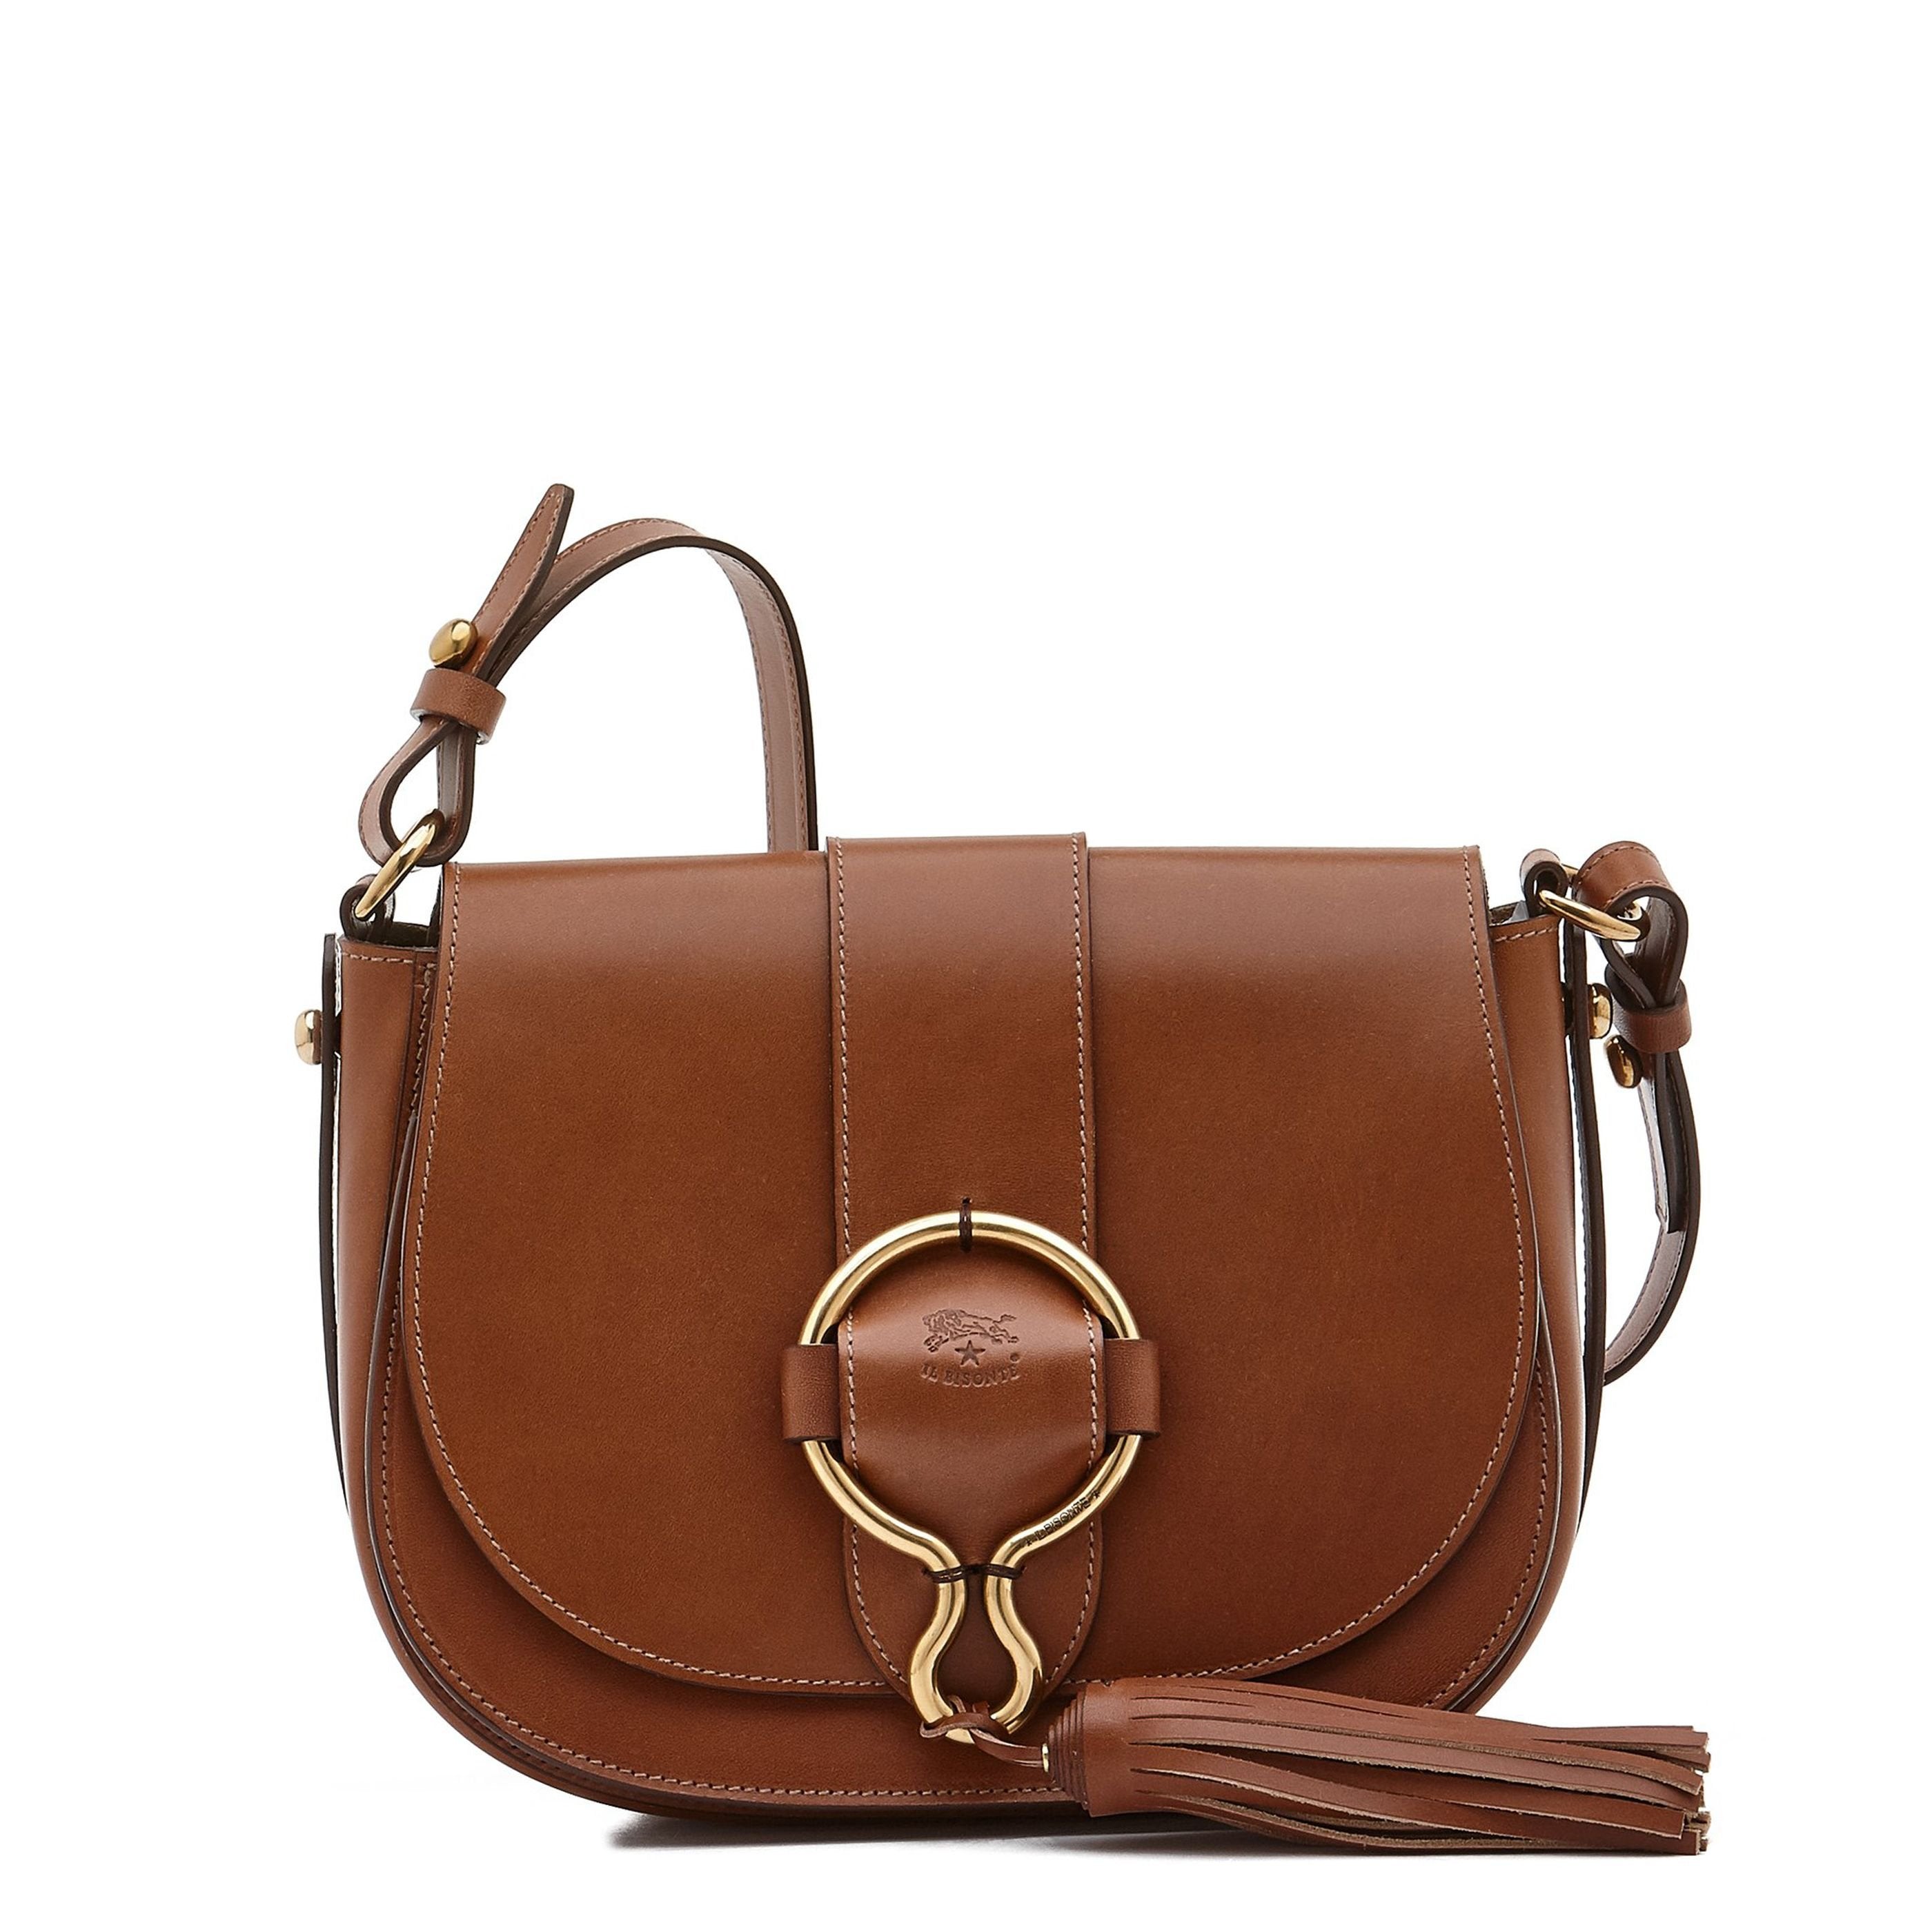 Maeve Loop Bag Italian Leather Handbag Handcrafted Skilled 